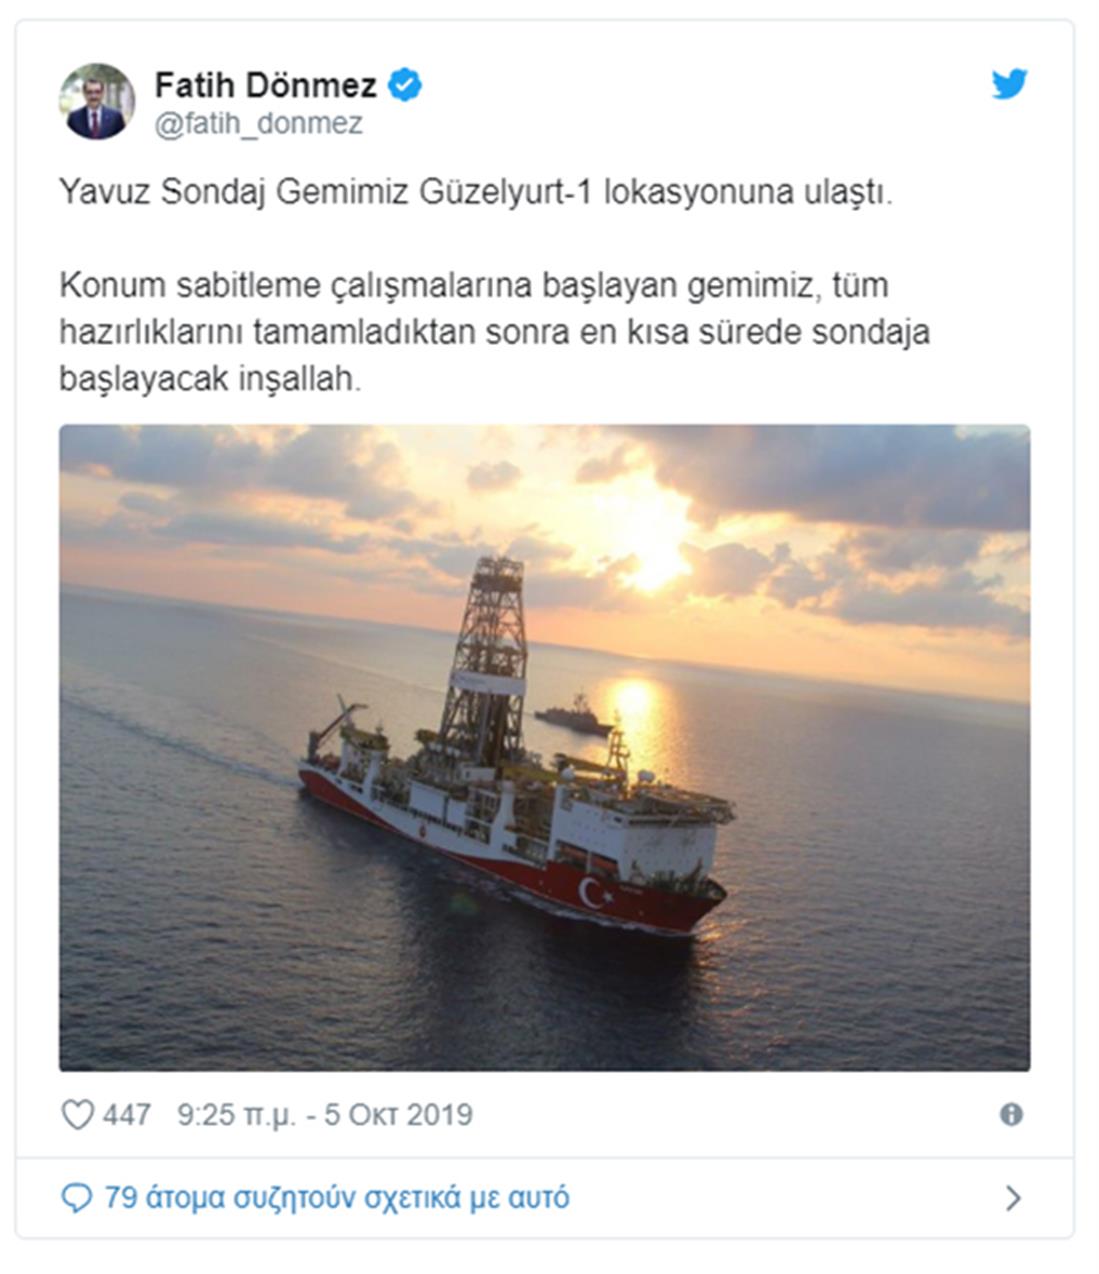 Γιαβούζ - Τούρκος υπουργός Ενέργειας - tweet